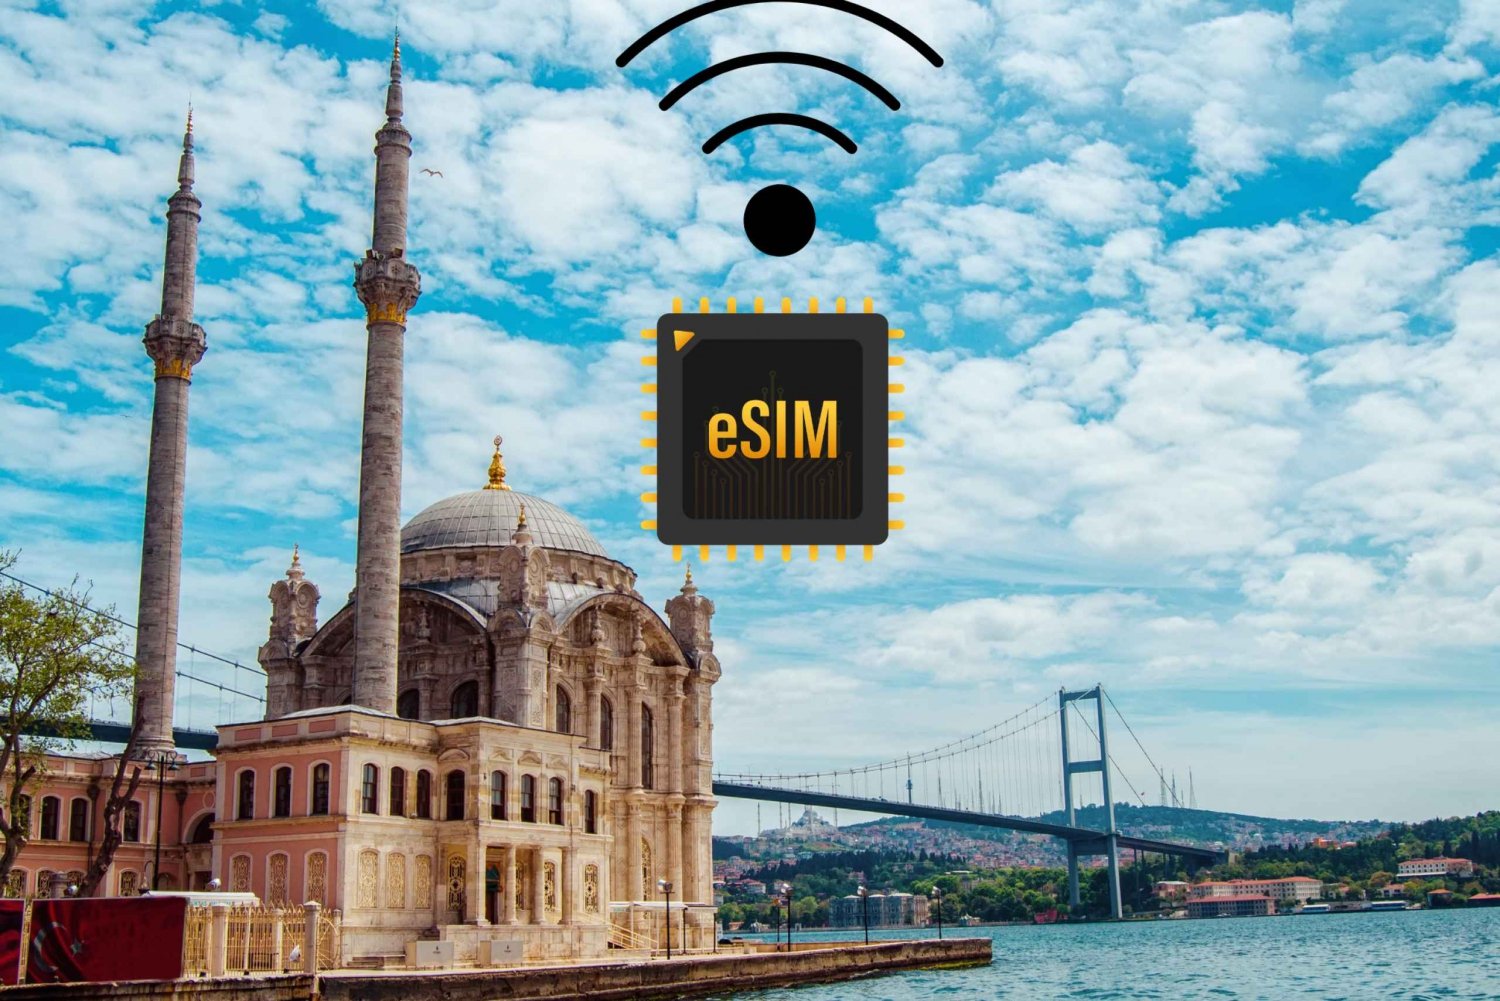 eSIM Turkki: 4G/5G